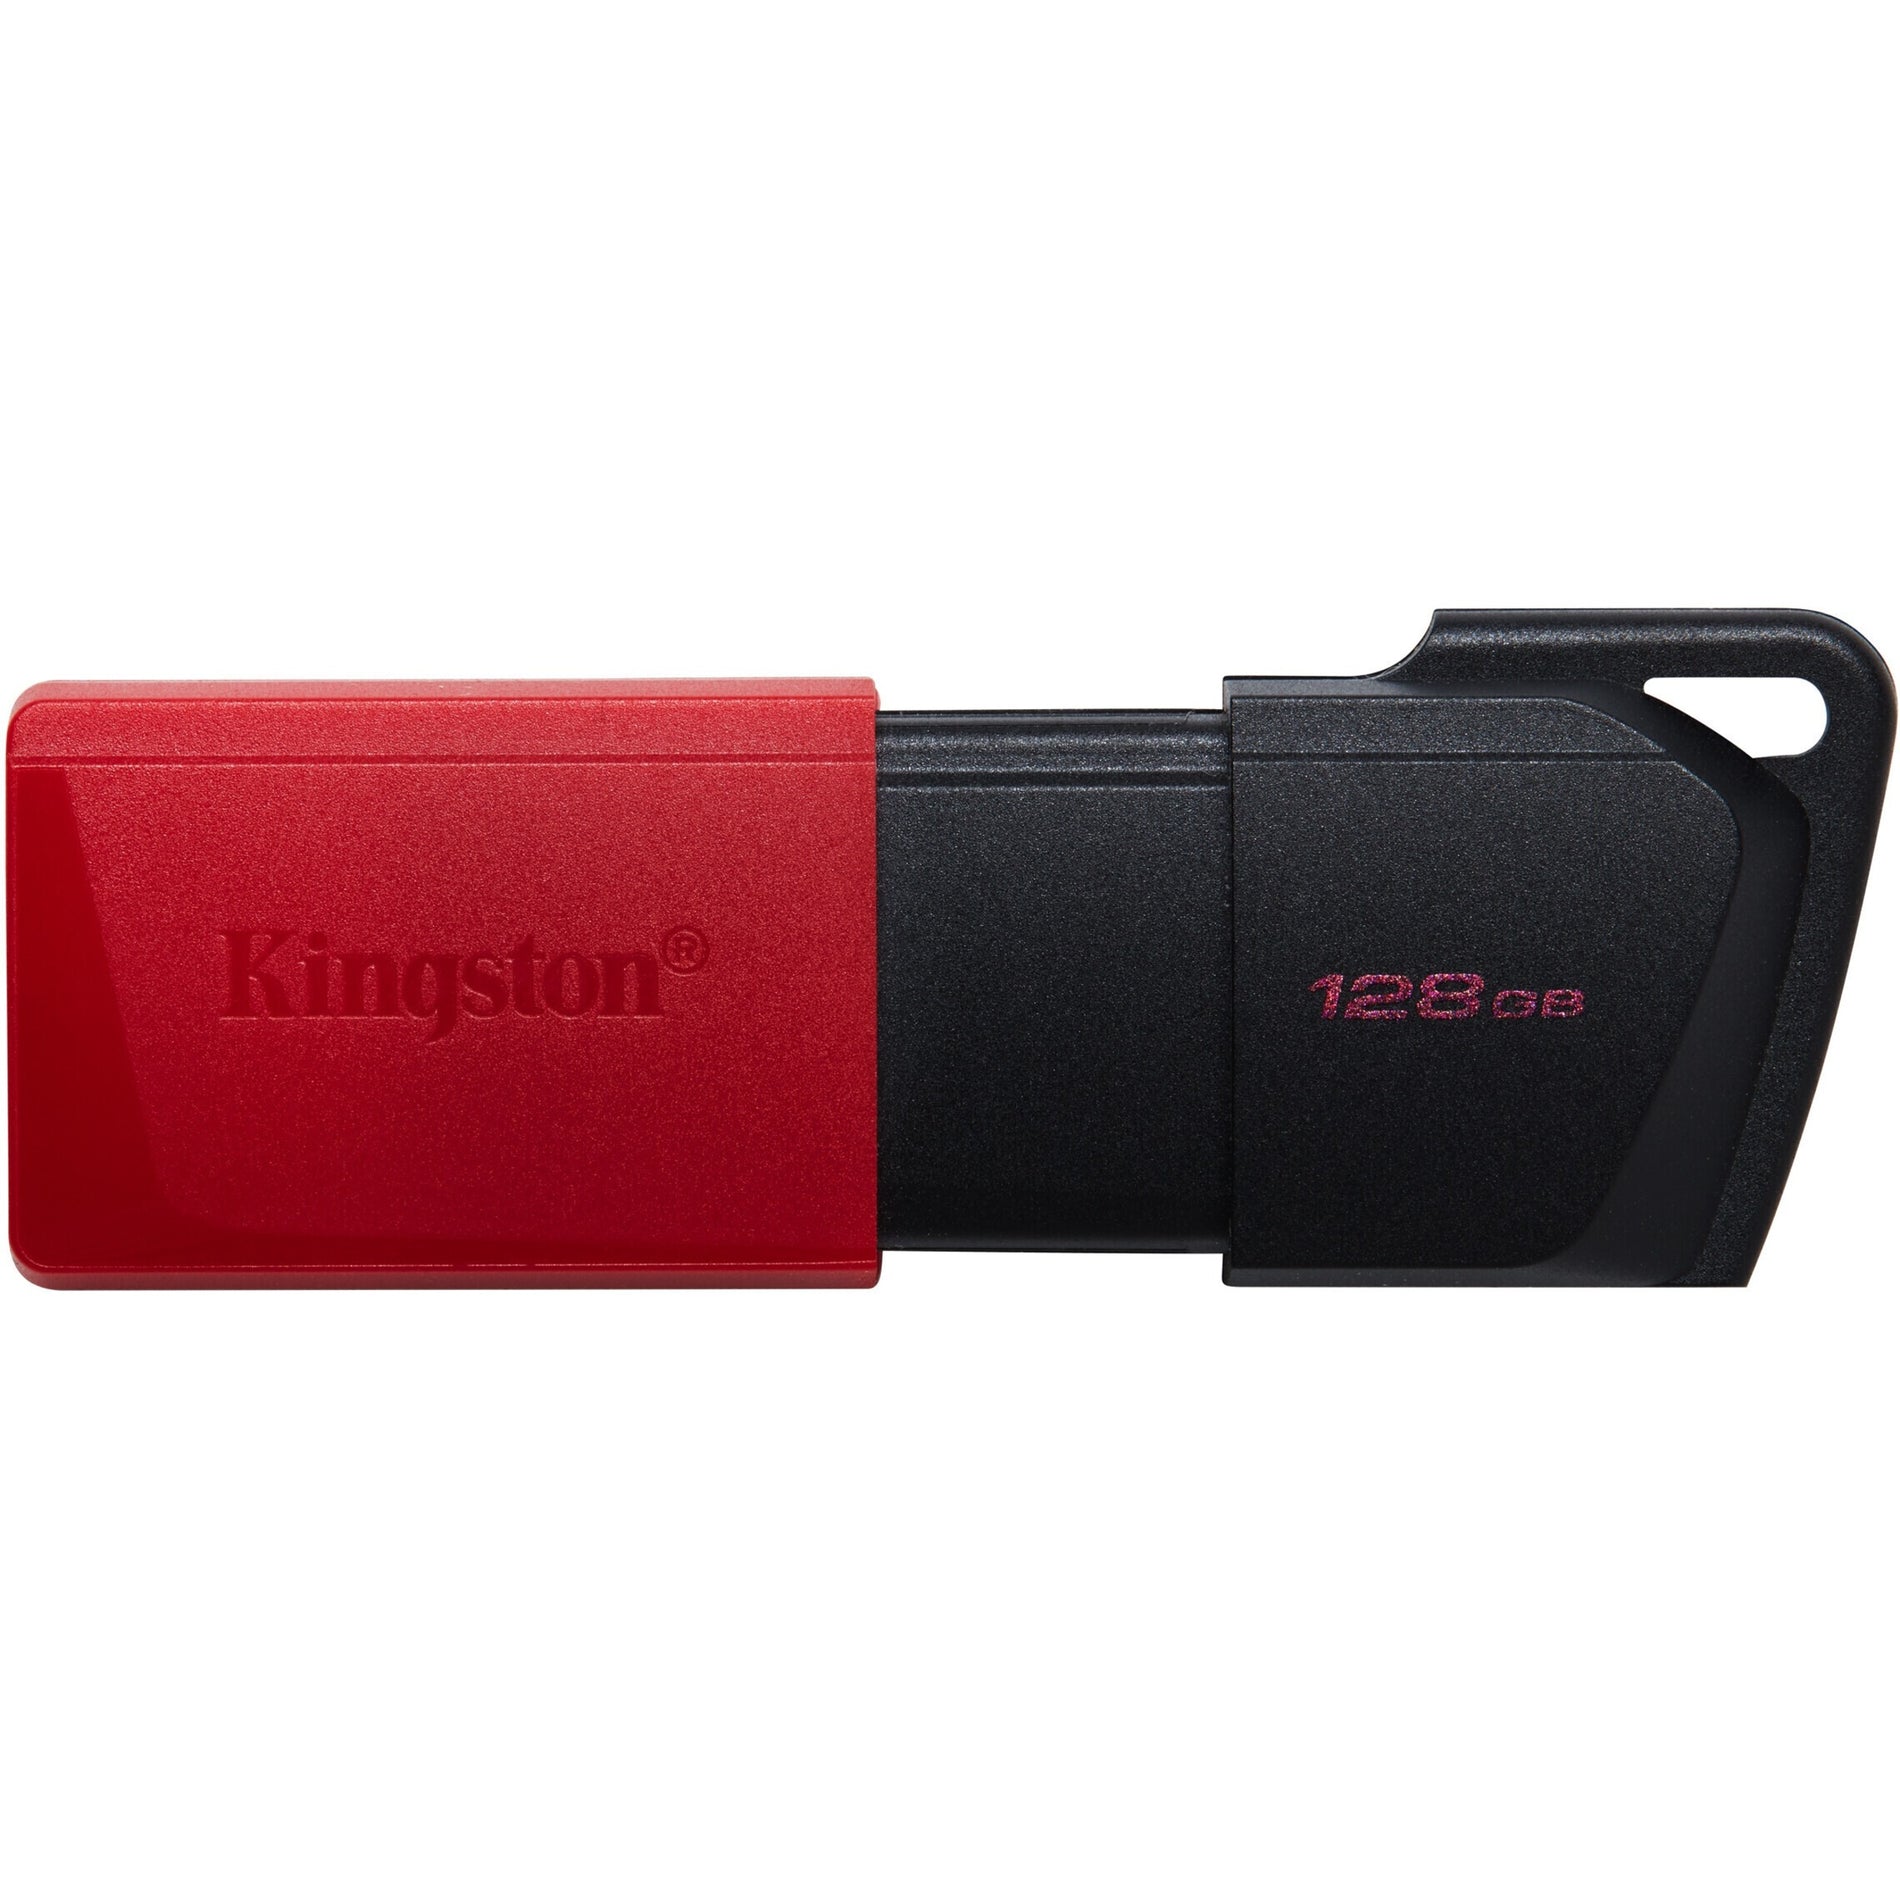 金士顿 DTXM/128GB DataTraveler Exodia M USB 闪存盘，128GB 存储空间，轻巧便携，滑盖设计，钥匙扣，便携式。适用于家庭、工作或旅行  金士顿 - jin1 shi4 dun4